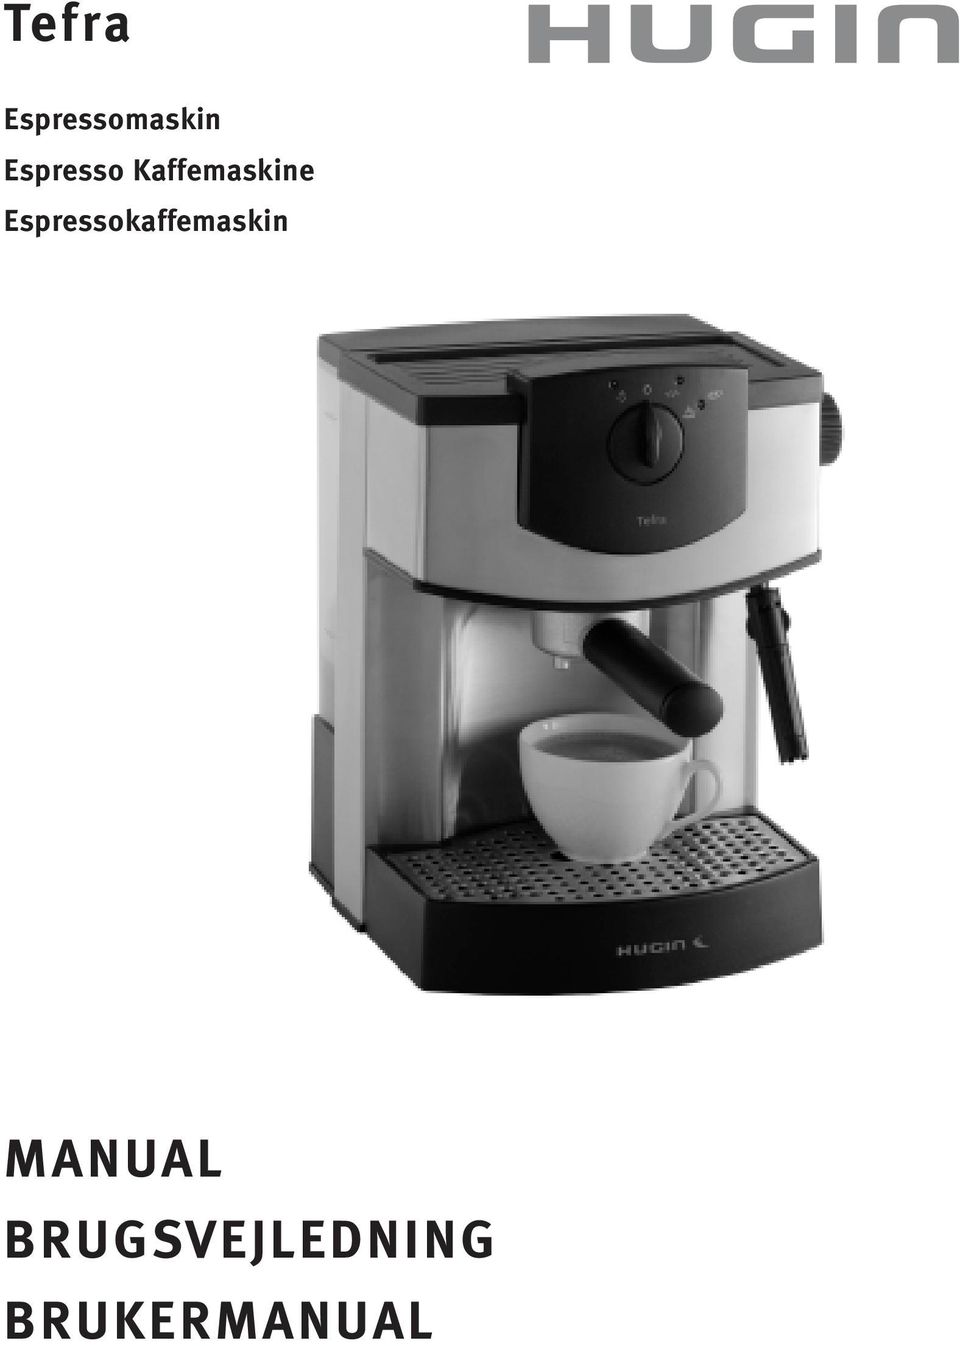 Espressokaffemaskin